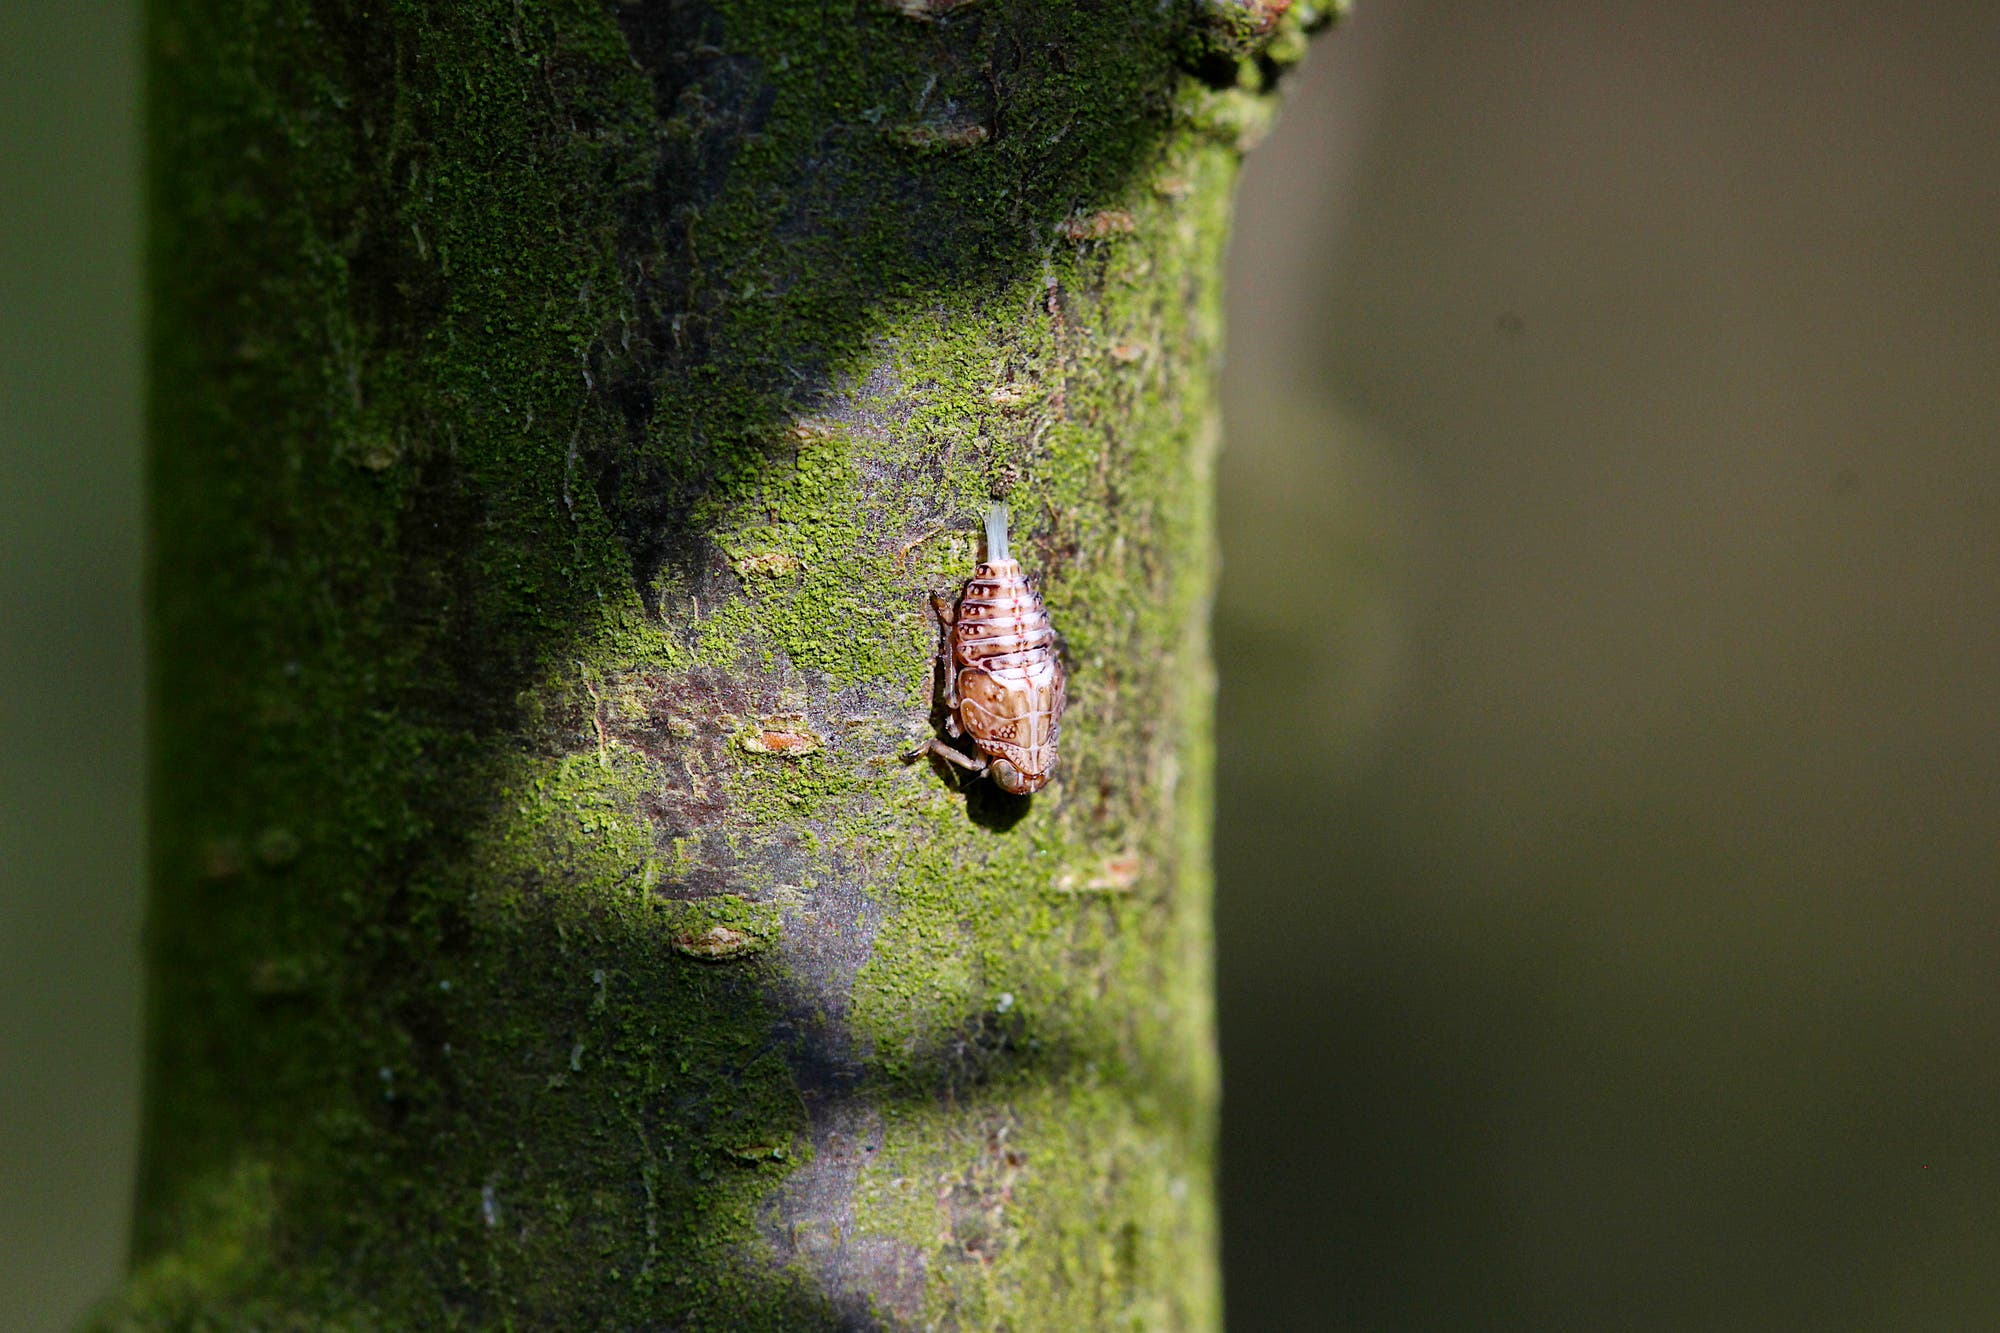 Nymphe einer Käferzikade sitzt auf einem grün-braunen Stamm: Aus dem Hinterleib der grau-braun-weißen Nymphe ragen blassblaue Wachsfäden.